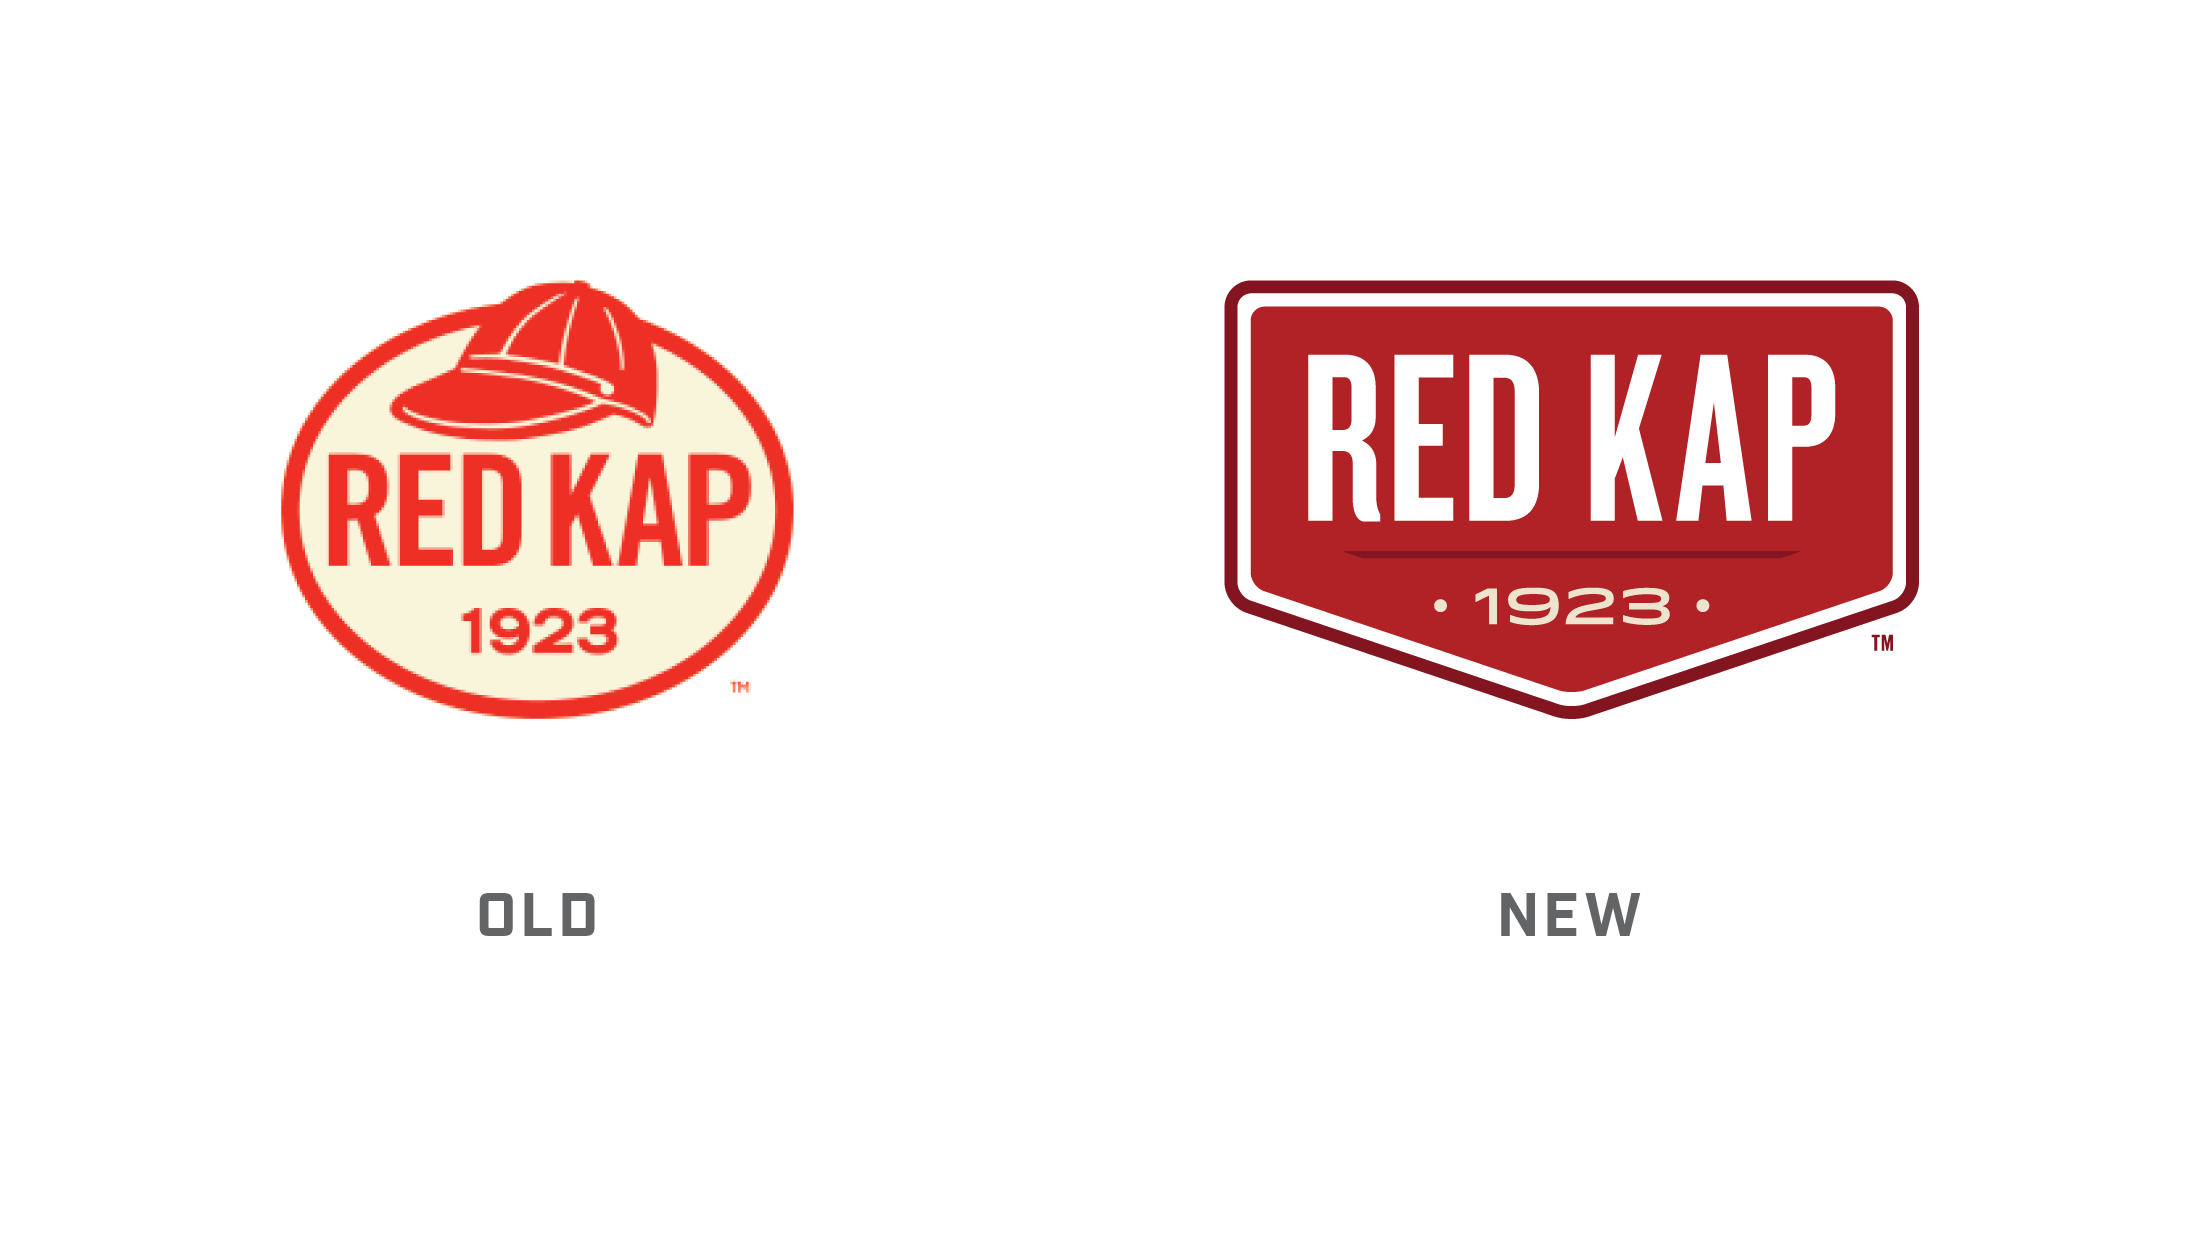 redkap_archive_logo_comparison